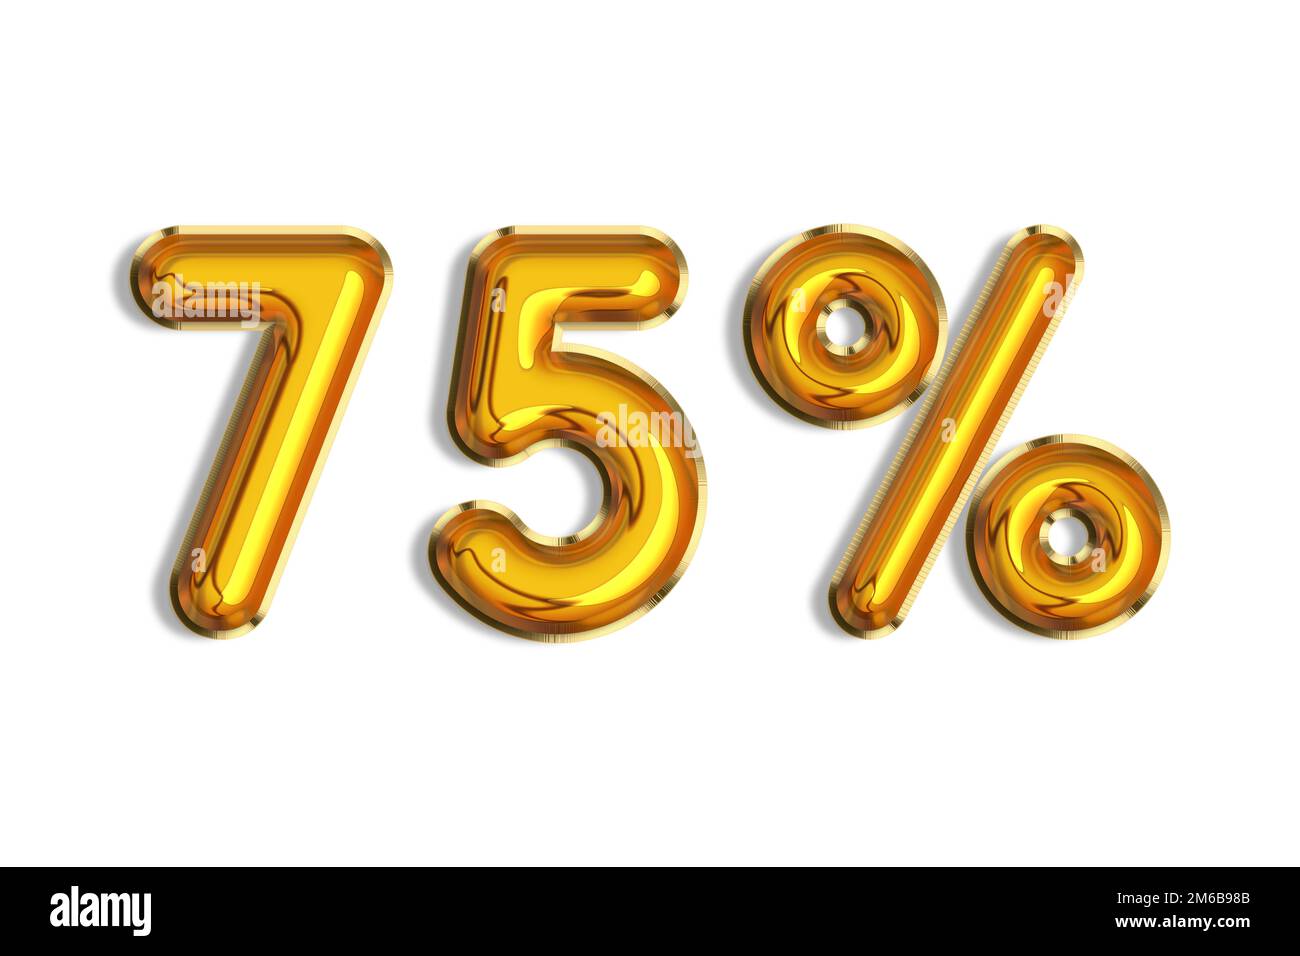 75% di sconto promozione vendita fatta di realistici palloncini d'elio 3d oro. Illustrazione del simbolo della percentuale d'oro per la vendita di poster, banner, annunci, negozio Foto Stock